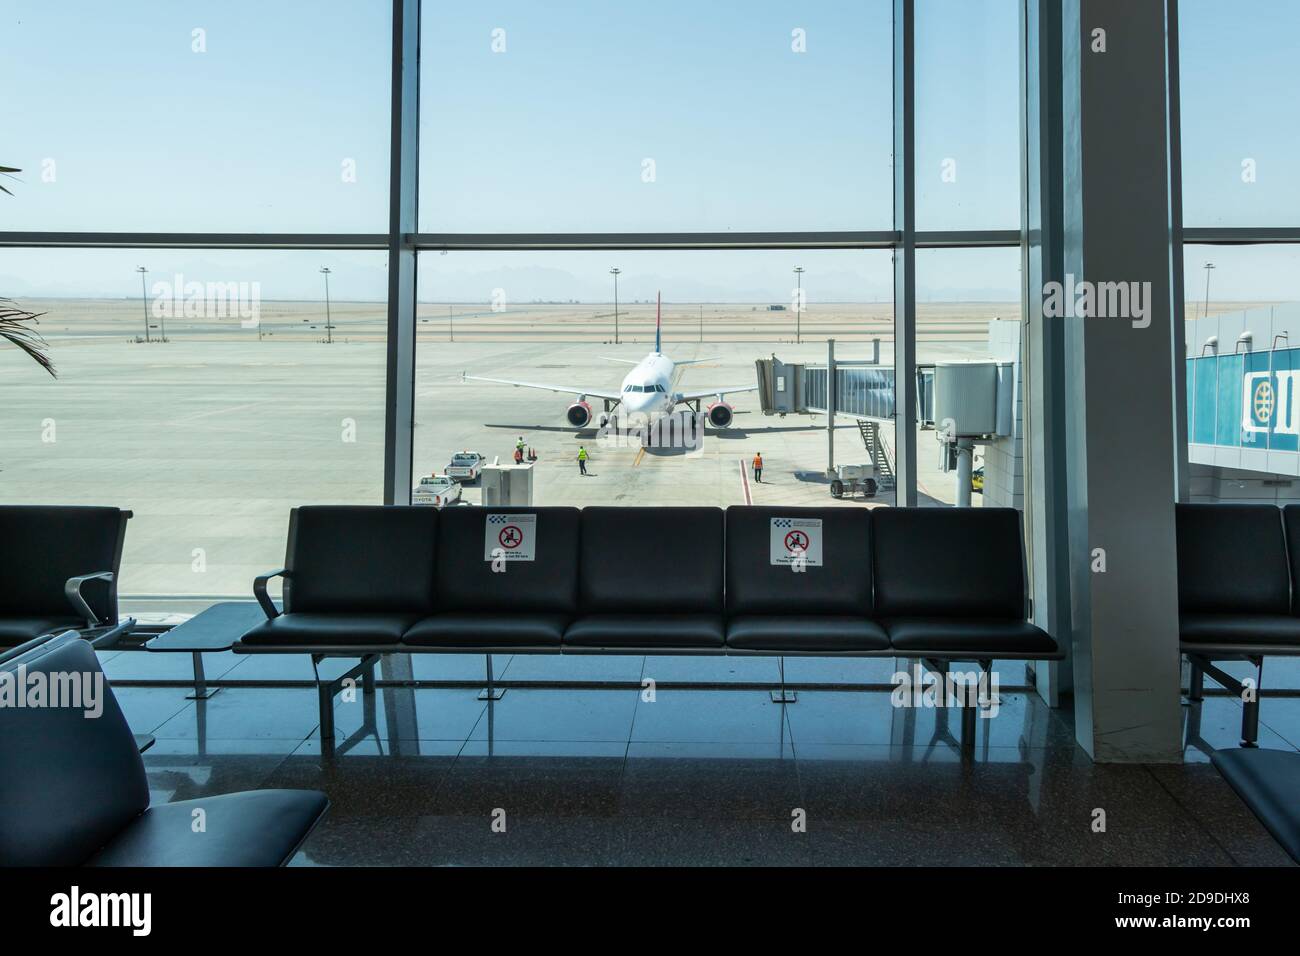 Hurghada, Egipto - 3 de octubre de 2020: Una terminal vacía con pegatinas de símbolos en las sillas. El personal del aeropuerto prepara el avión para el despegue. Viaje bajo Covid Foto de stock